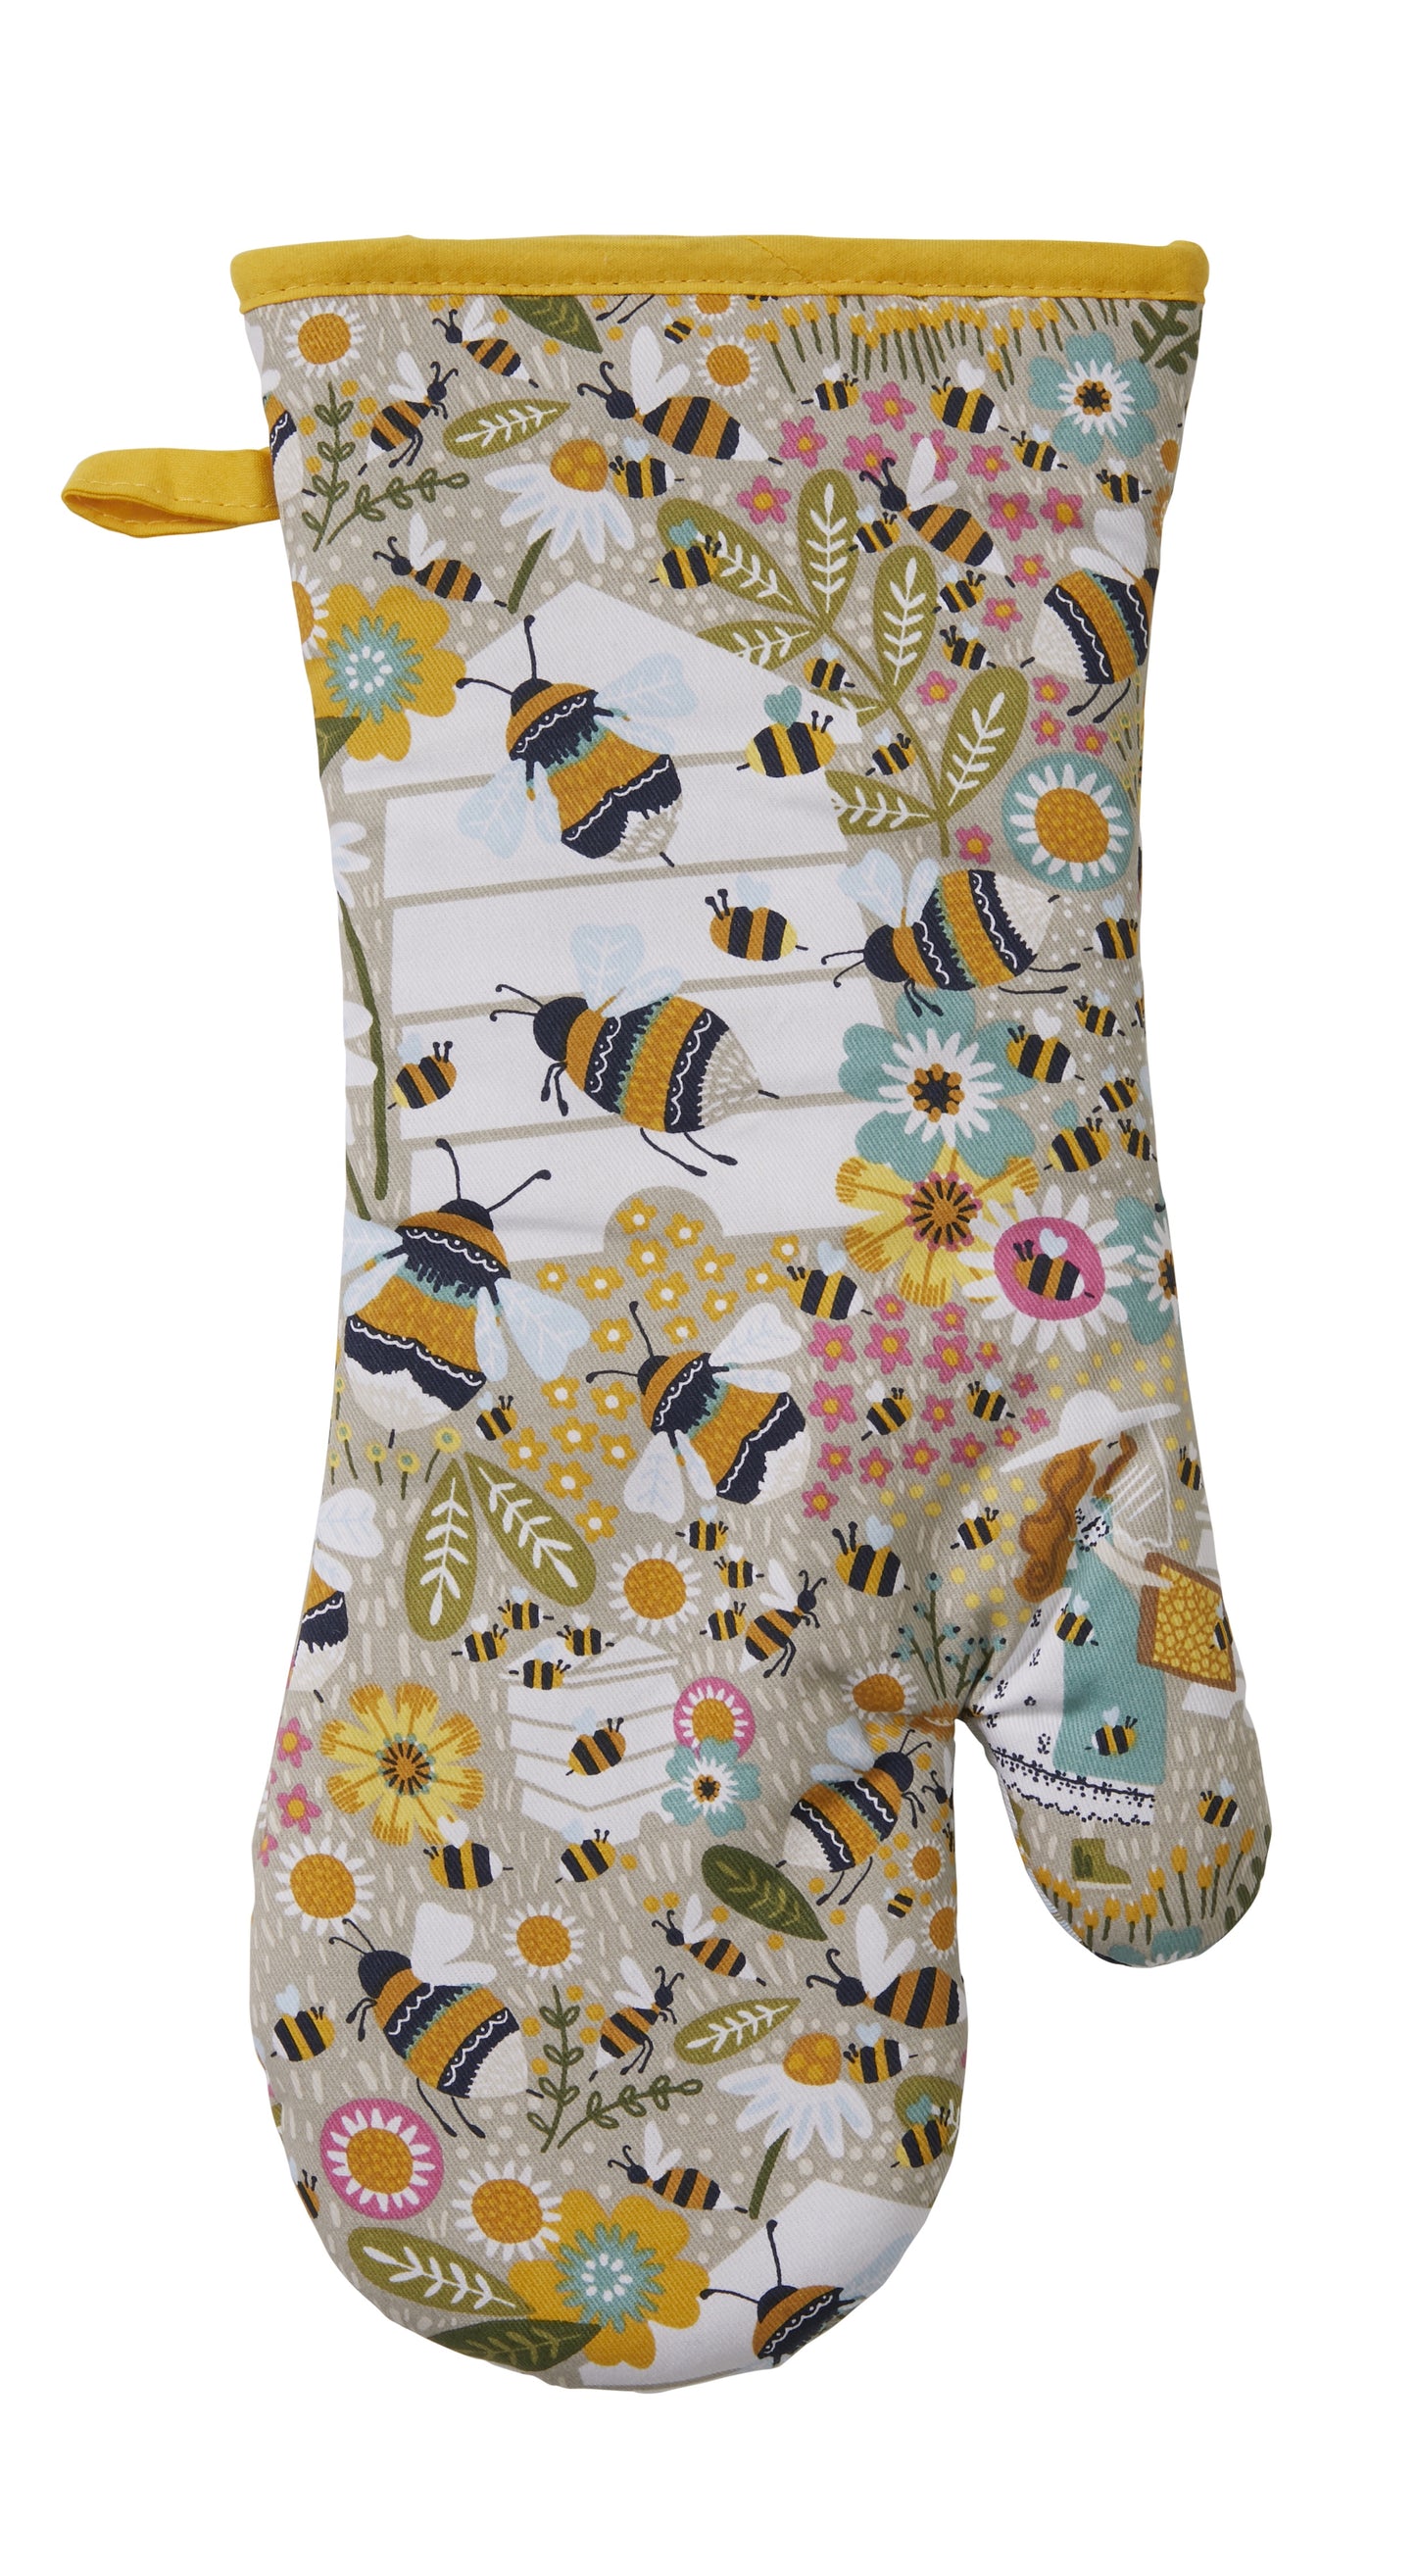 Beekeeper Gauntlet Oven Glove